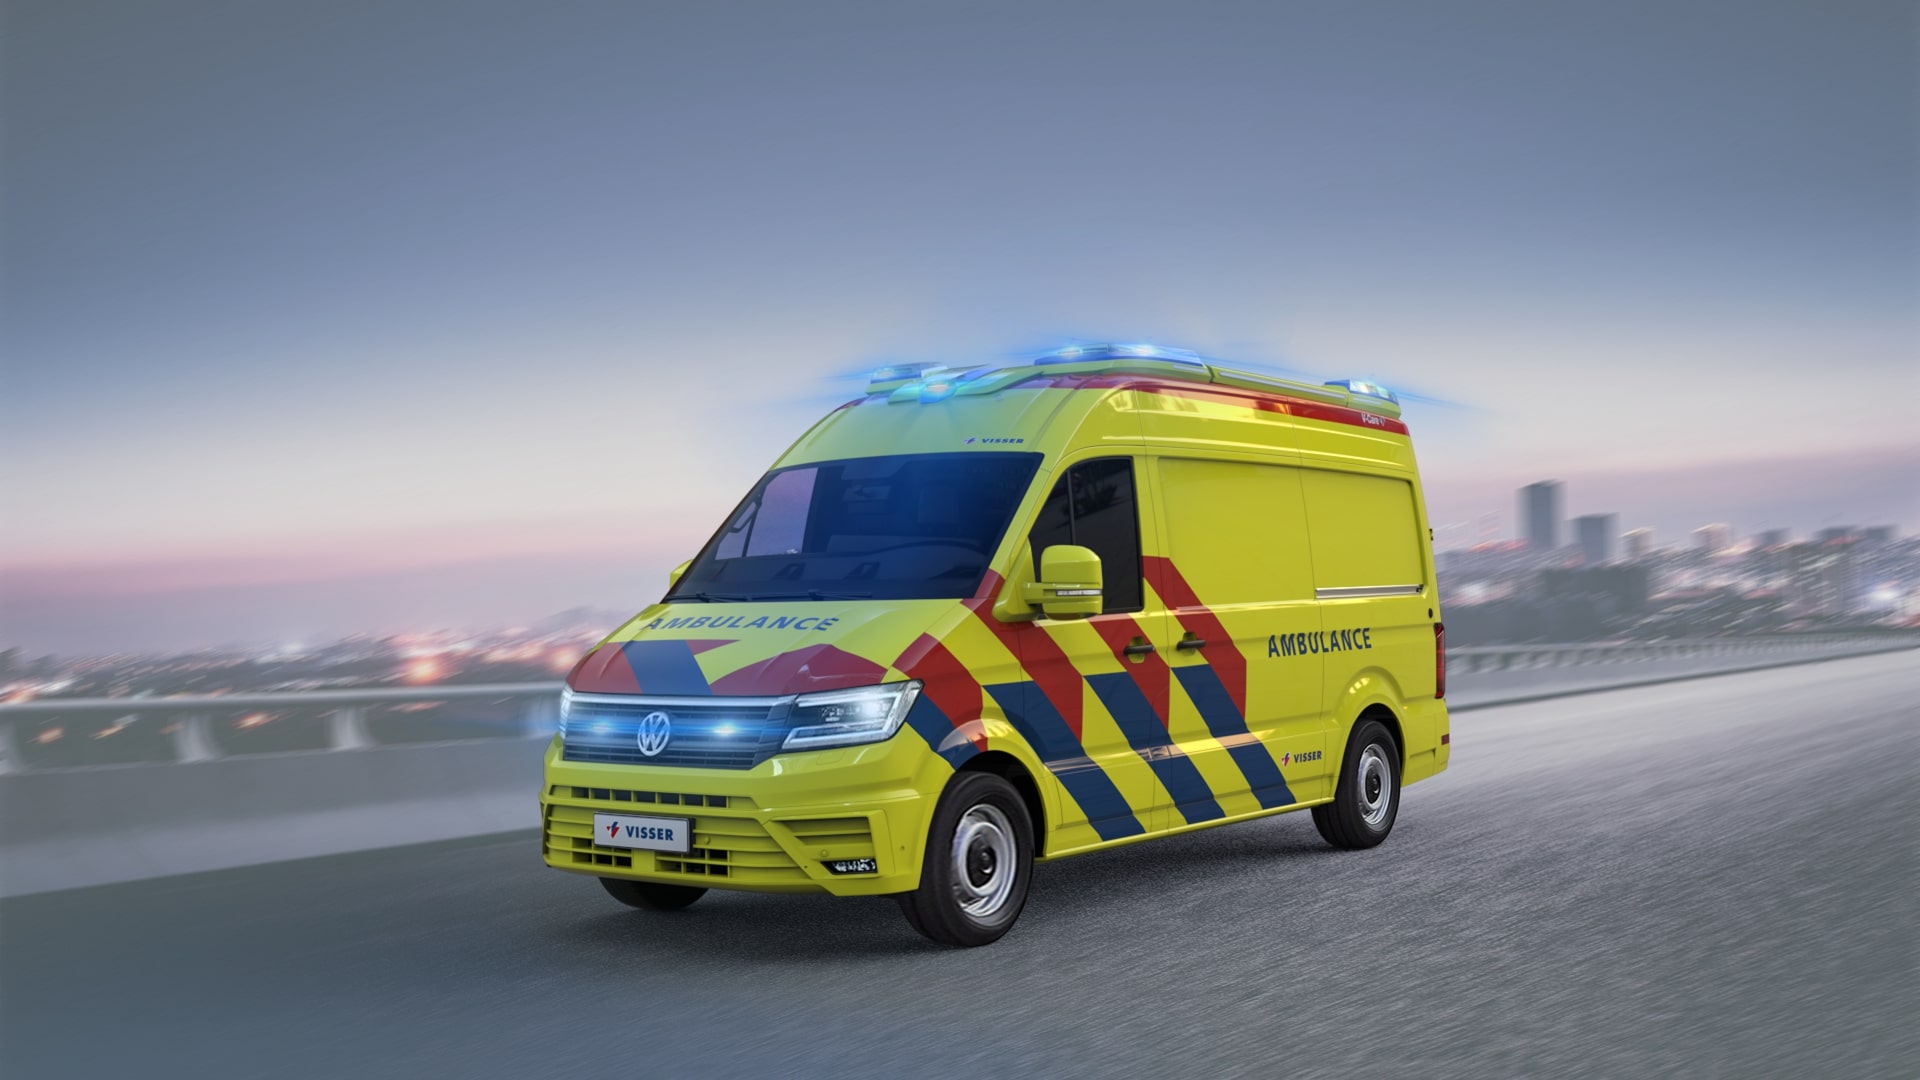 https://www.visserleeuwarden.nl/content/uploads/2022/11/visser-leeuwarden-ambulance.jpg